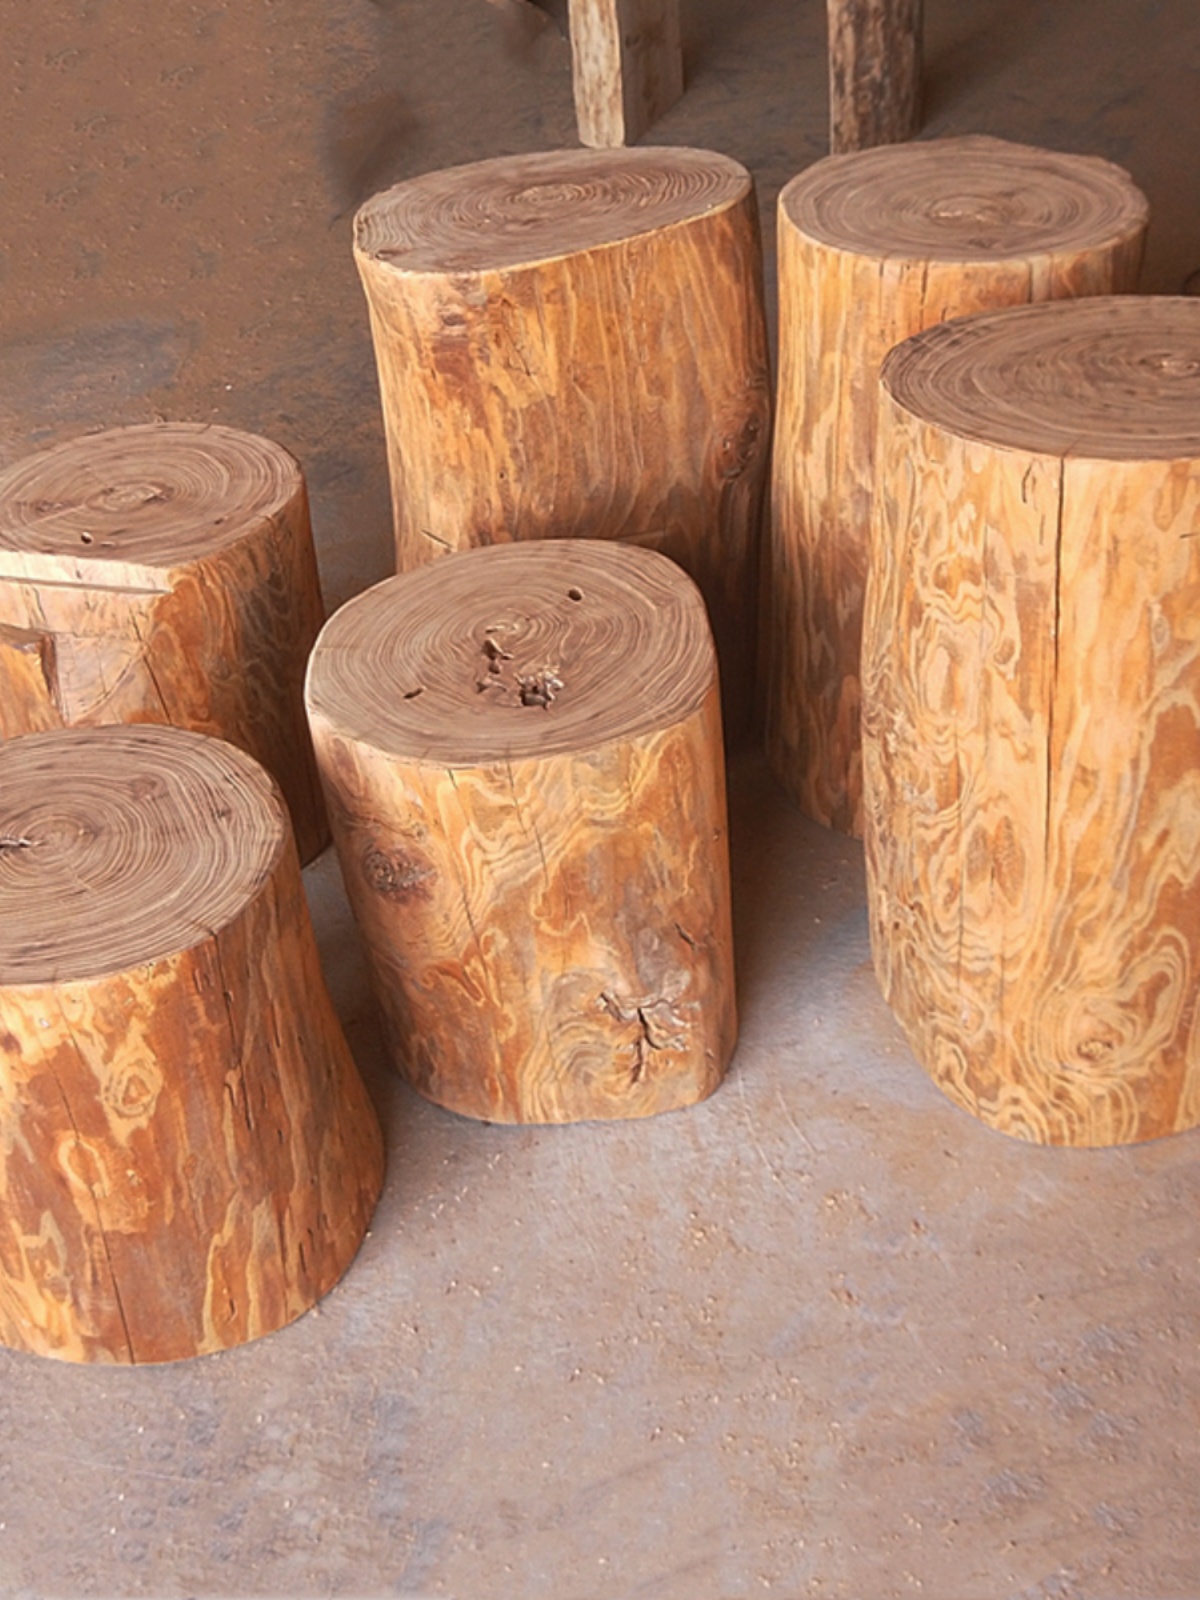 原木墩树桩木桩风化老榆木树墩艺术花架茶台底座木头墩子矮凳实木